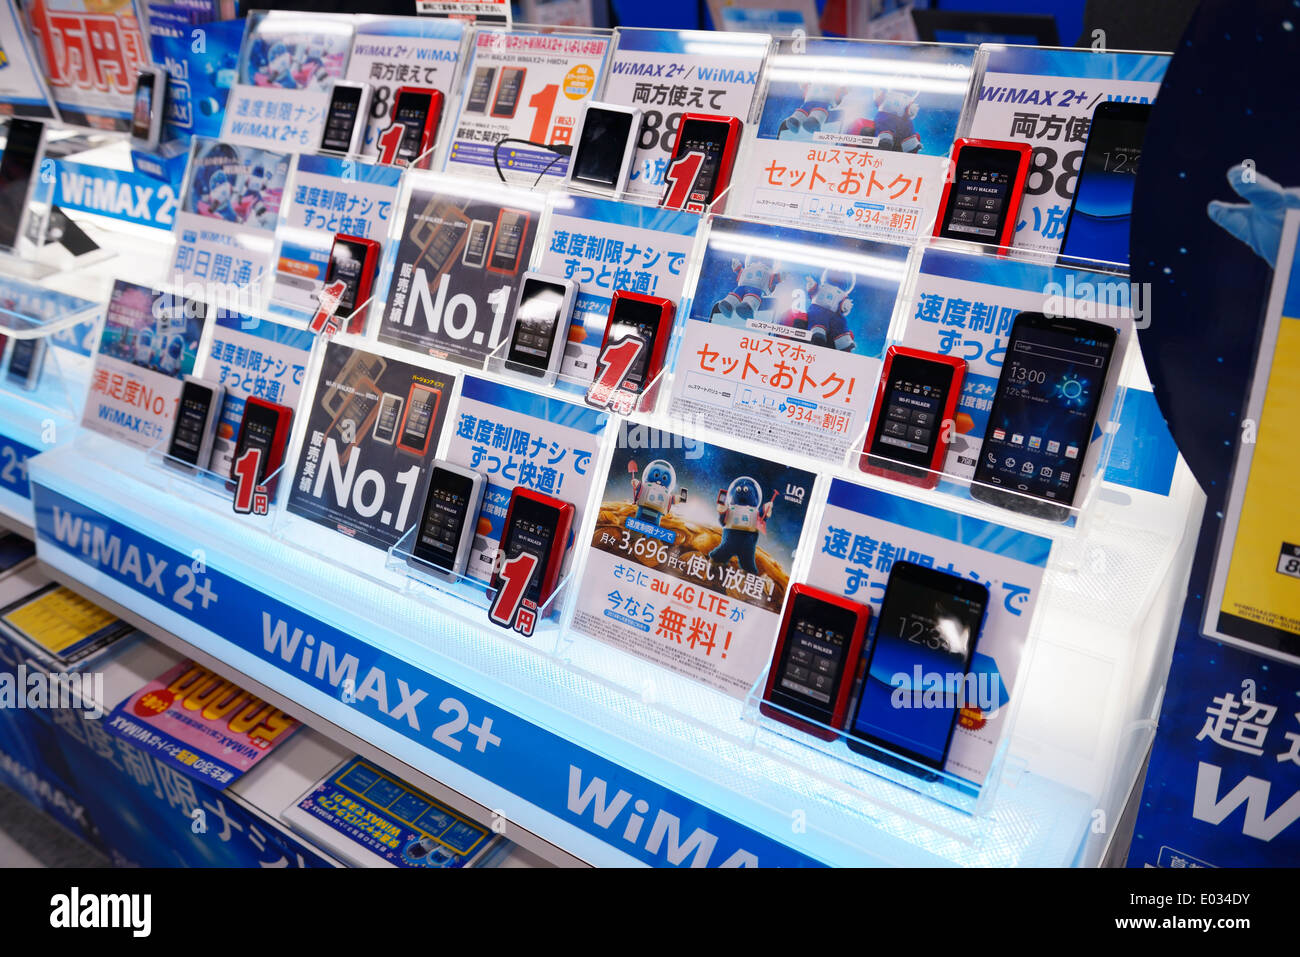 La tecnologia WiMAX 2 portatile periferiche WiFi WiFi tascabile, Wi-FI walker sul display del negozio, Tokyo, Giappone. Foto Stock